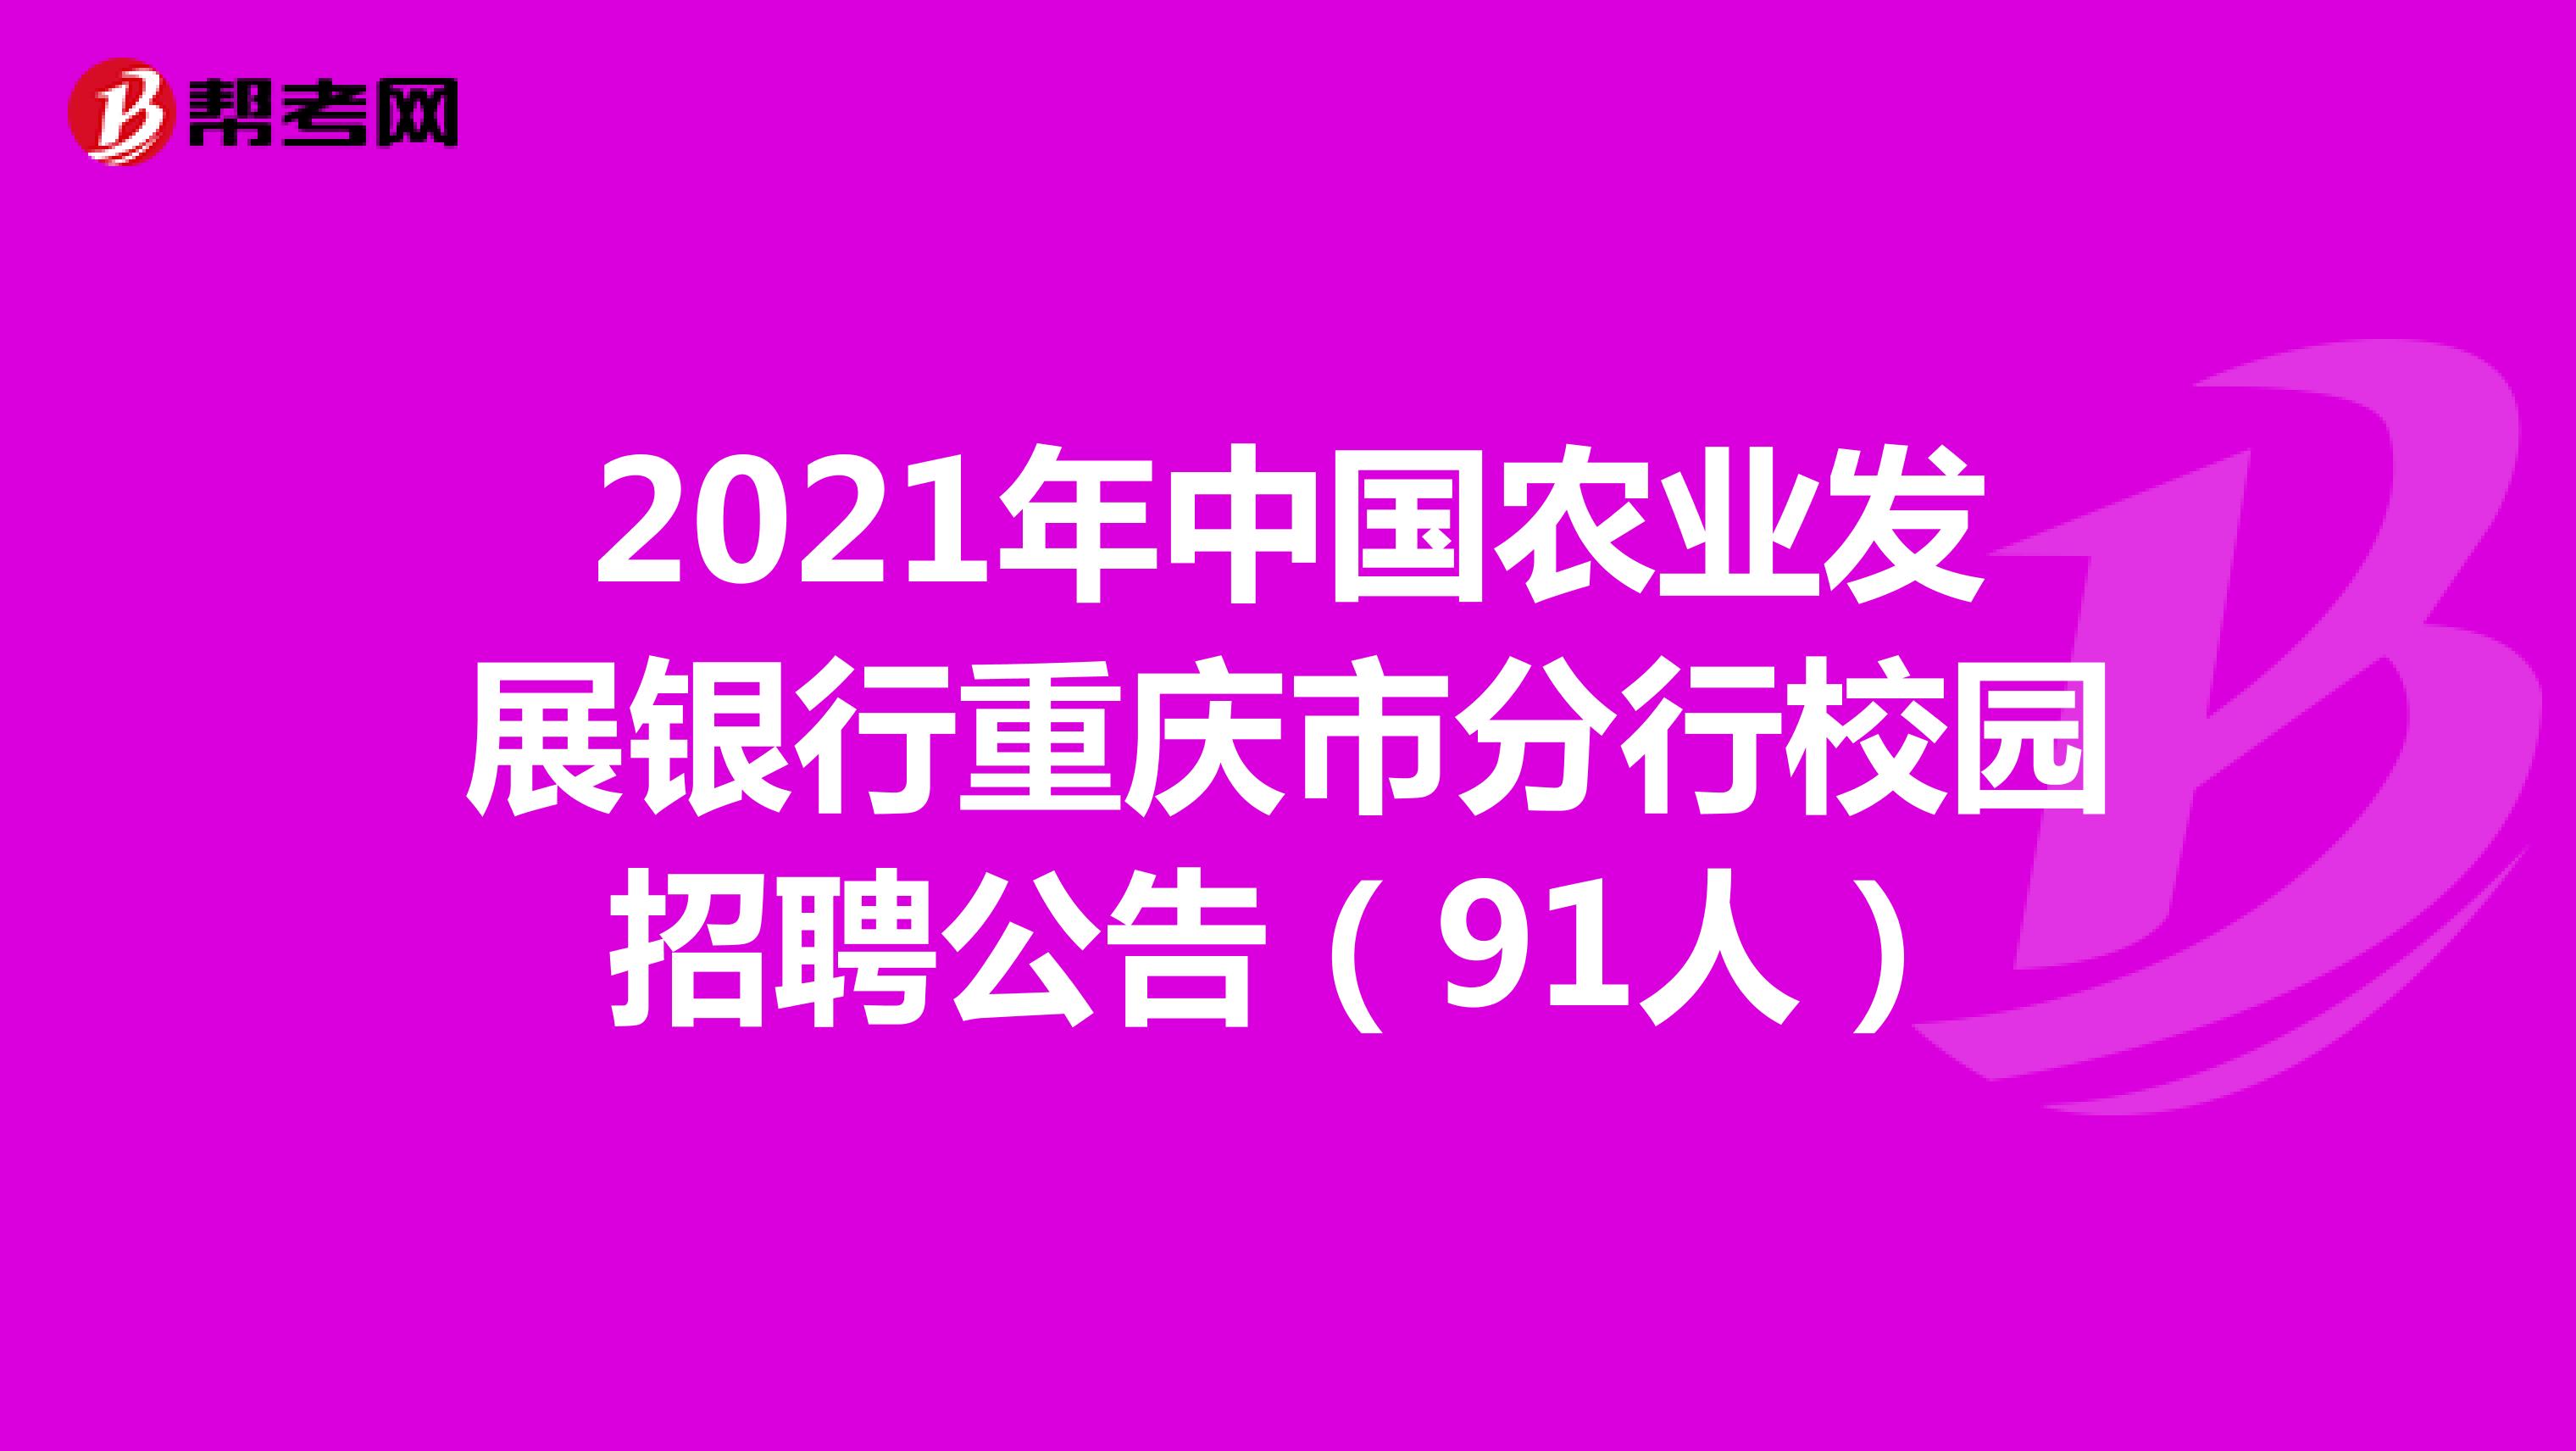 2021年中国农业发展银行重庆市分行校园招聘公告（91人）